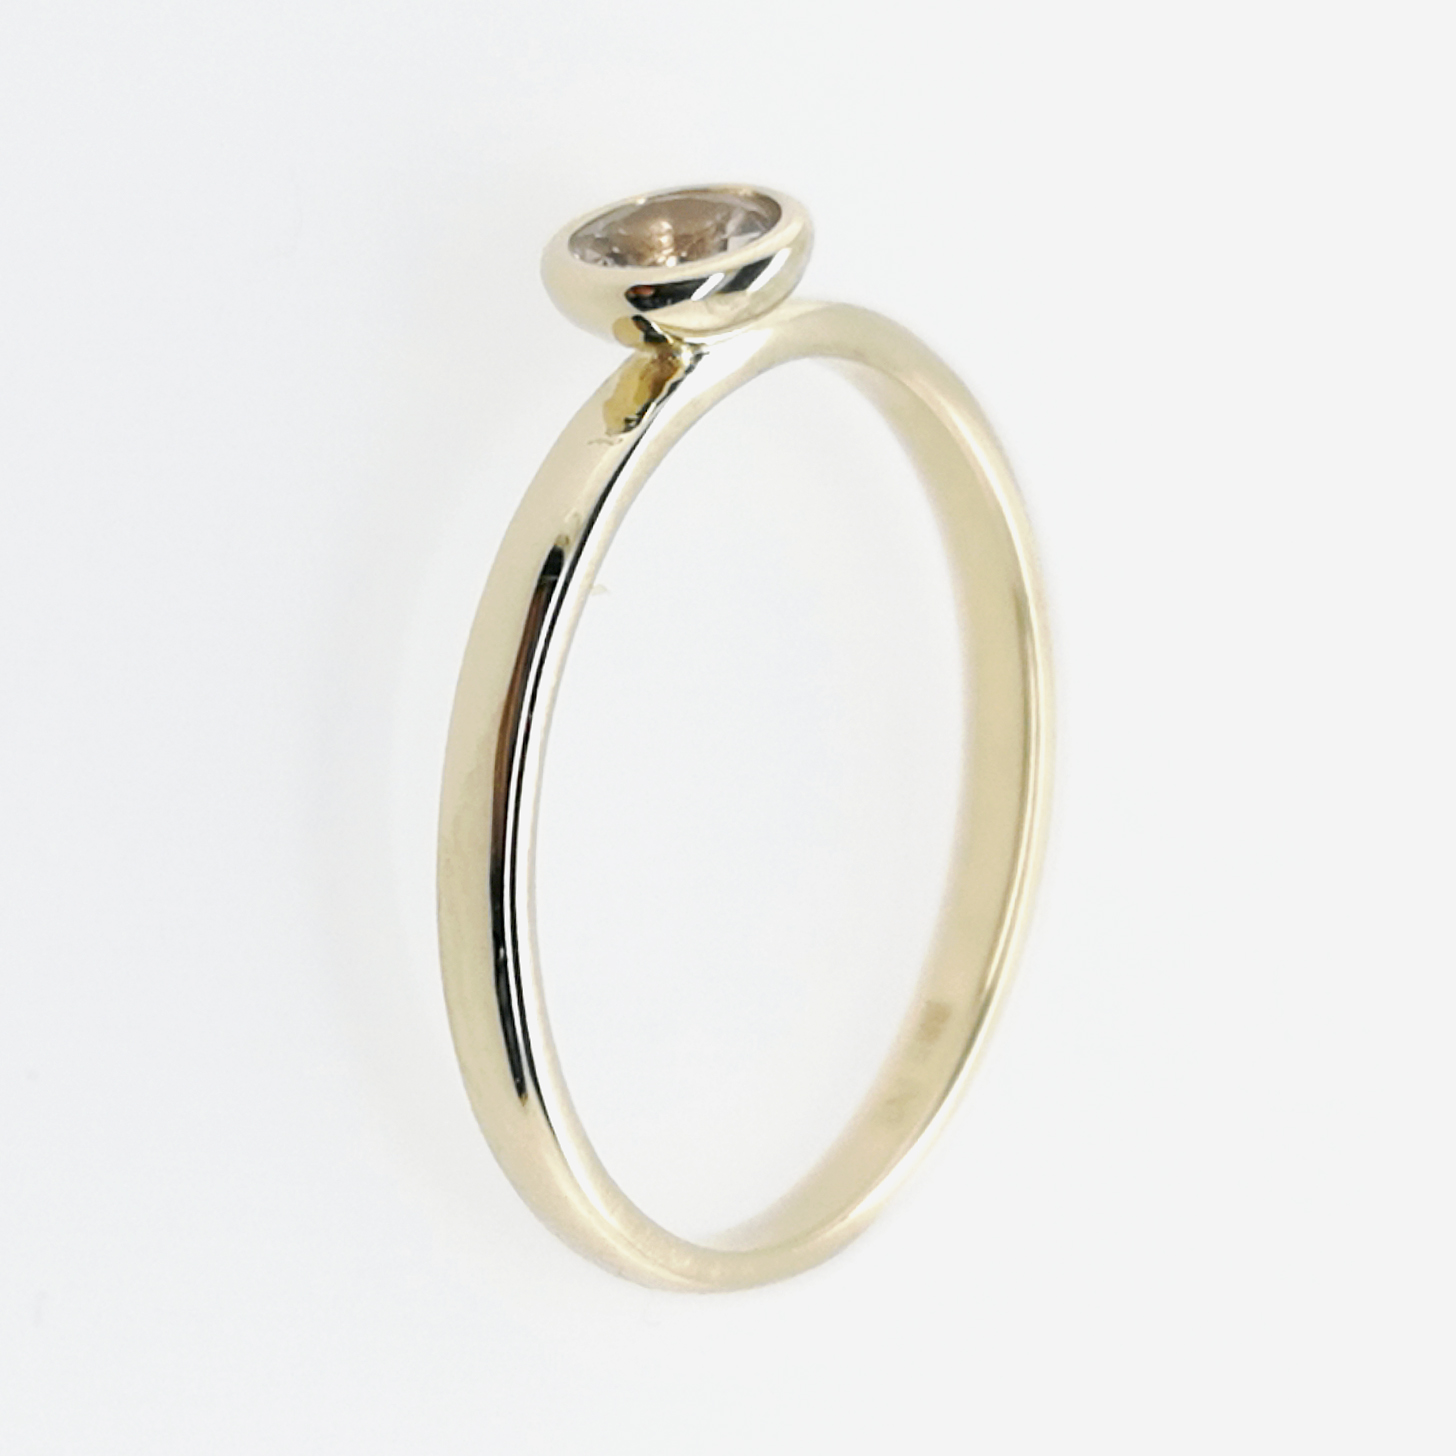 Ring mit Morganit zart rosa, facettiert ca. 0,25 ct Edelstein, aus 585 Gelbgold, Sogni d´oro Facettenreich